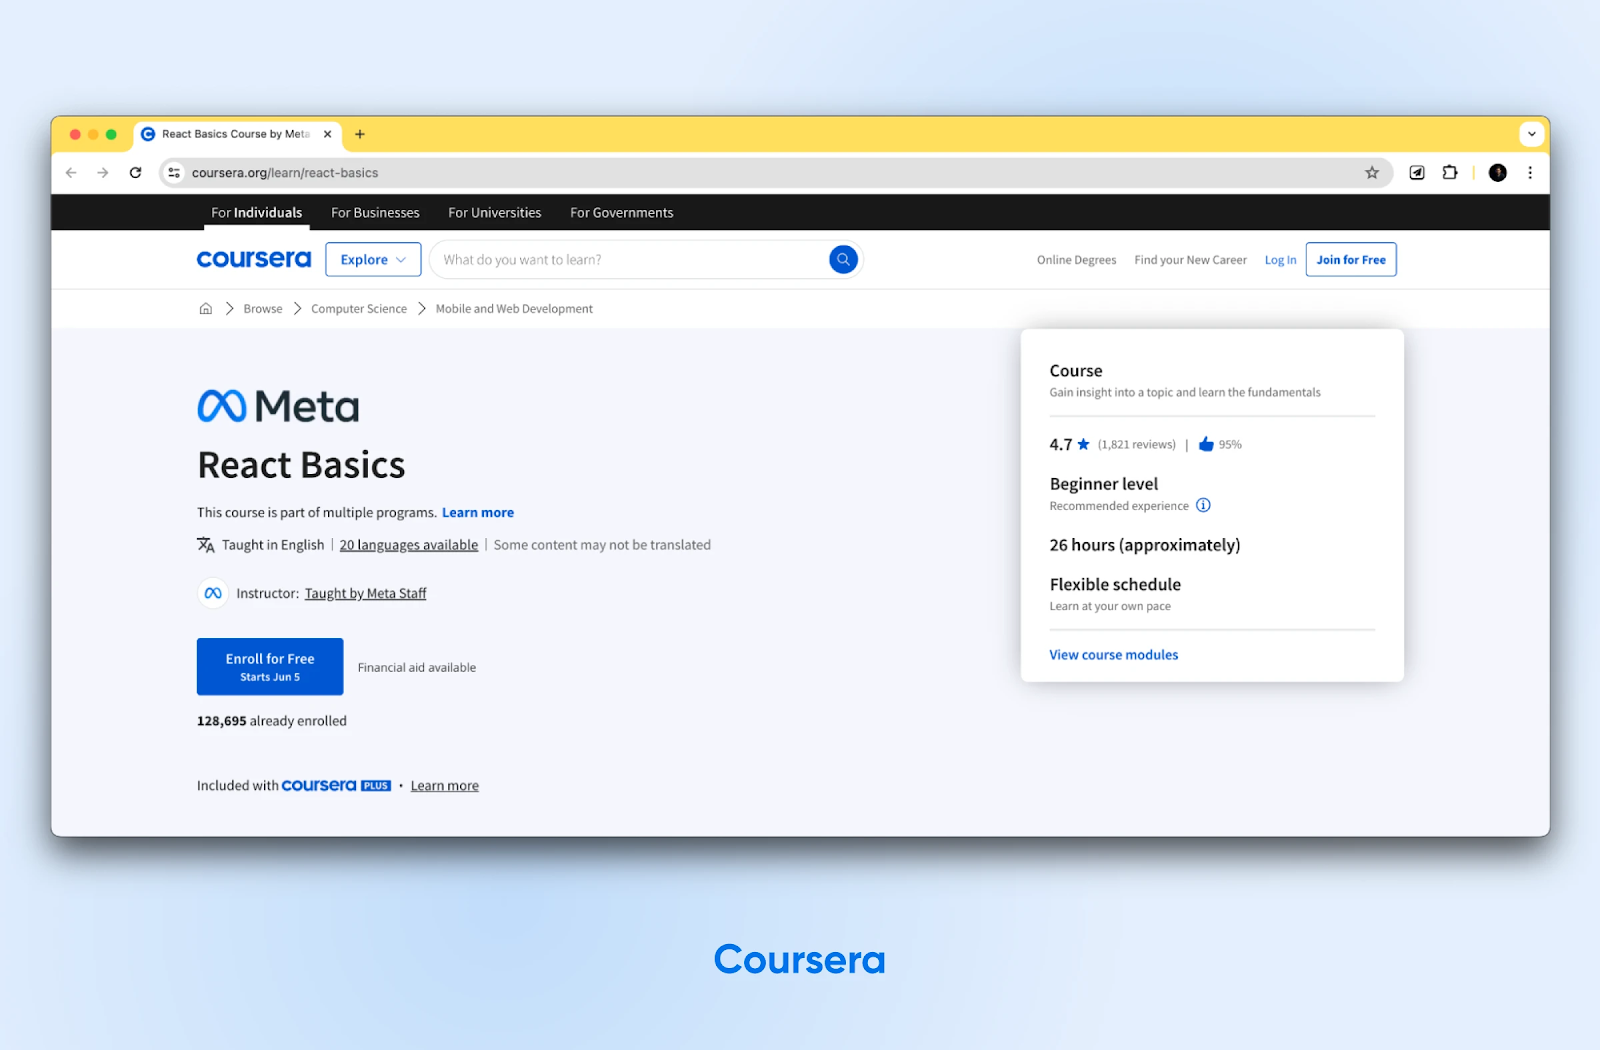 El curso de Coursera "Meta React Basics" obtiene 4,7 estrellas. La página de inicio tiene un botón azul "Inscríbete gratis".